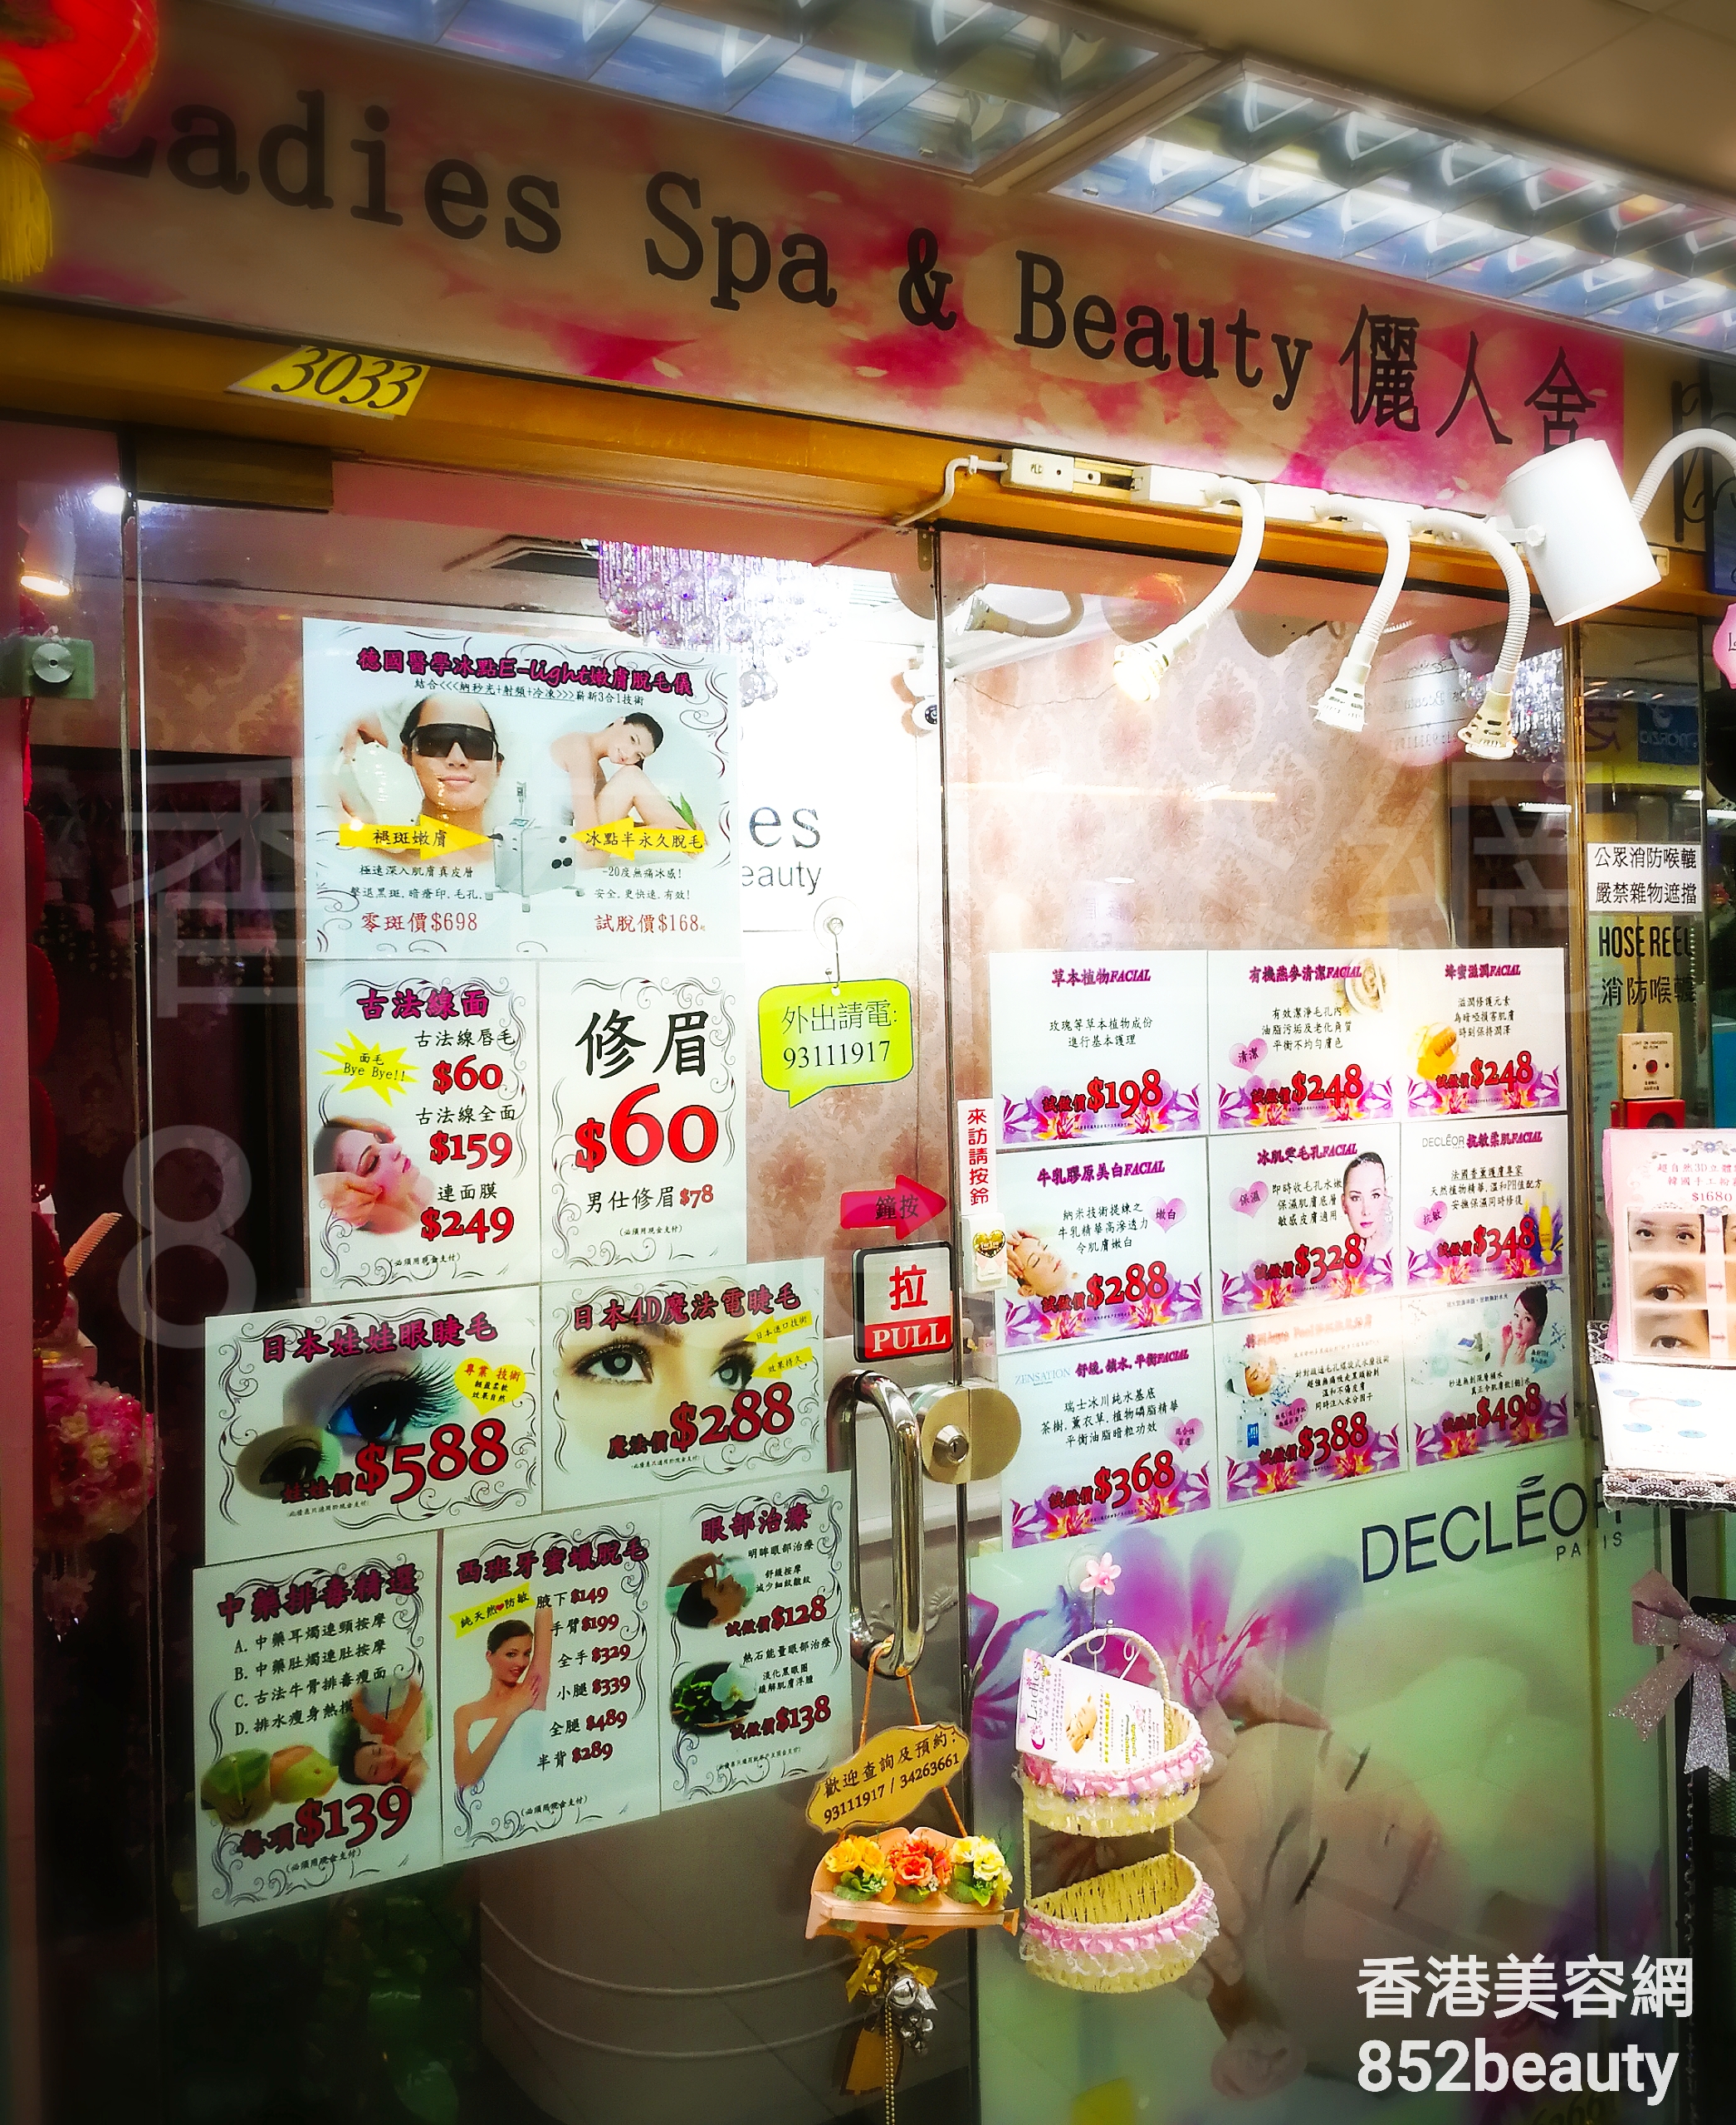 香港美容網 Hong Kong Beauty Salon 美容院 / 美容師: Ladies Spa & Beauty 儷人舍